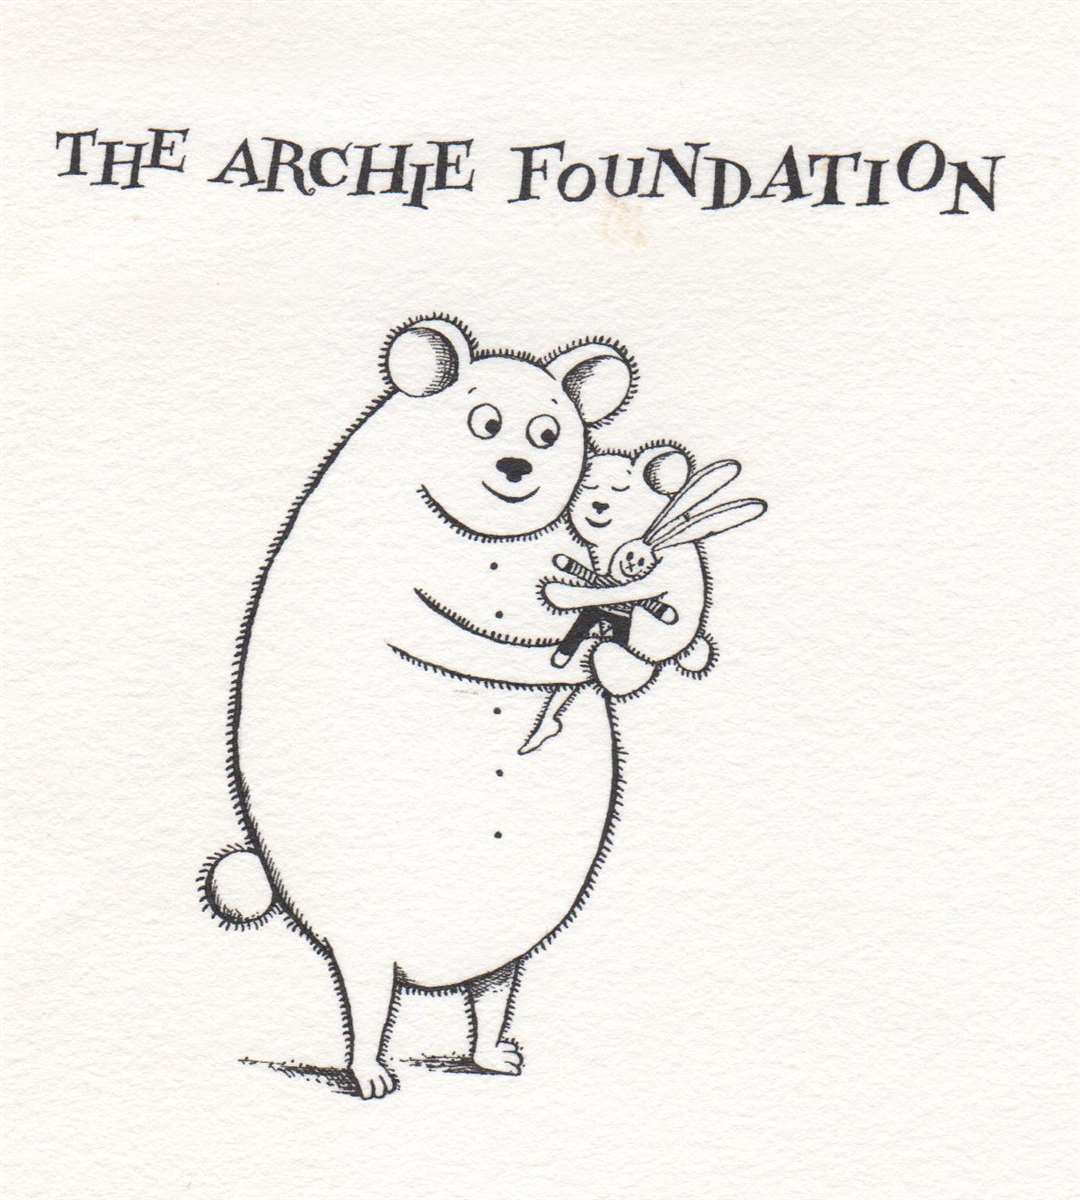 The original Archie bear.